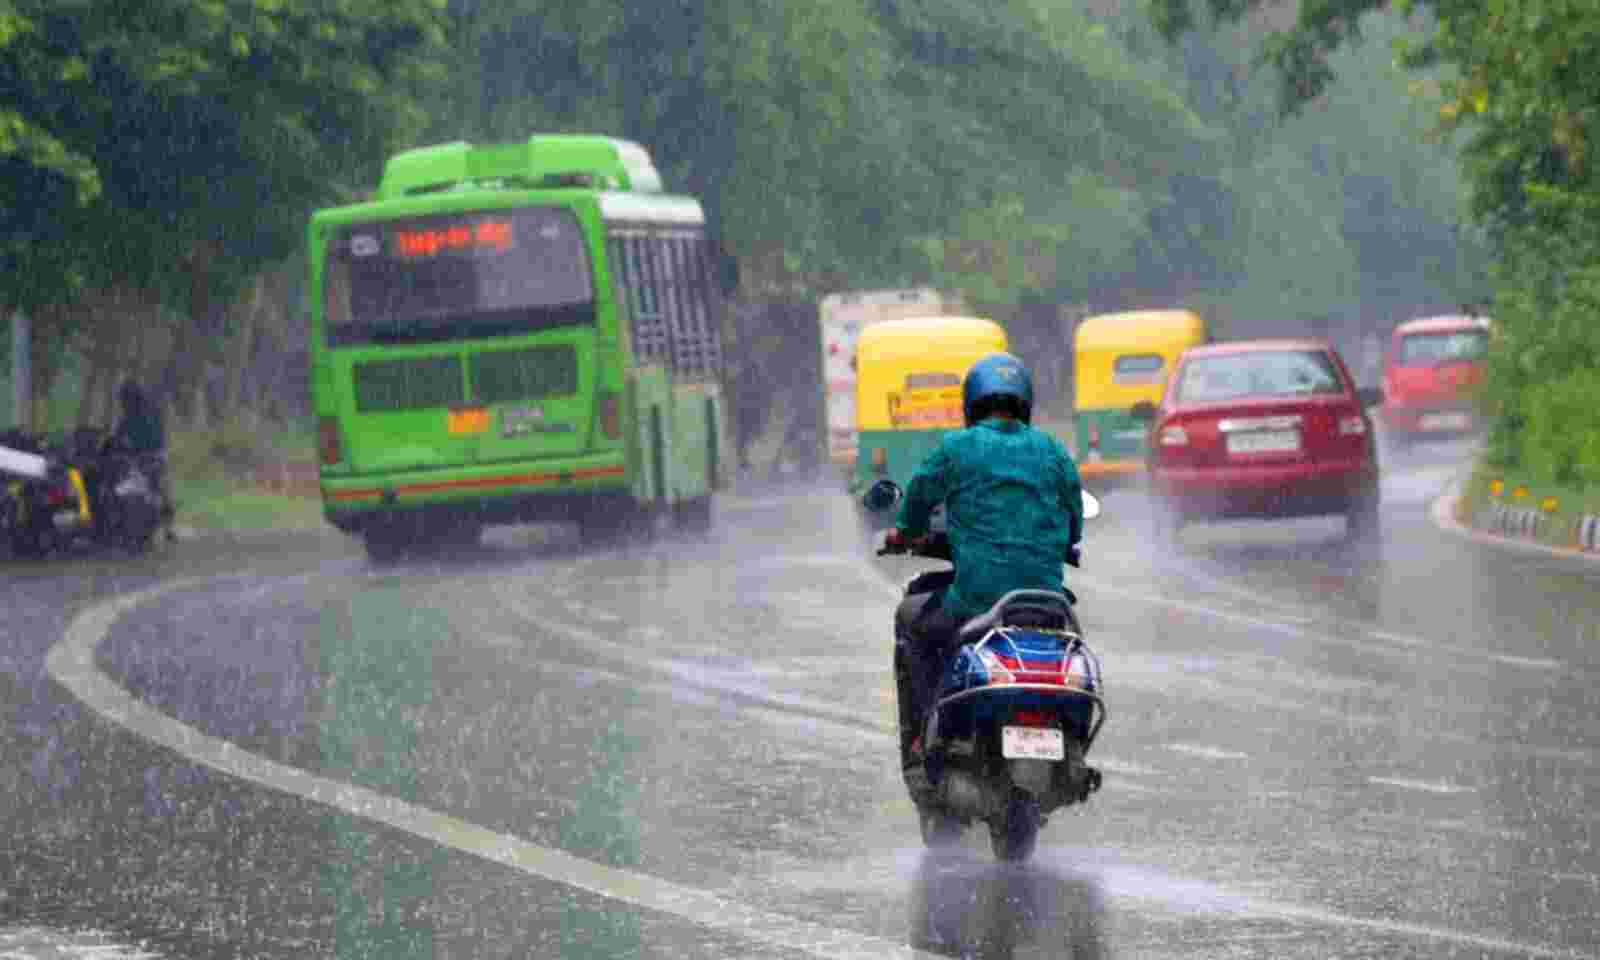 मौसम अपडेट: आईएमडी ने अगले 4 दिनों के लिए दिल्ली, यूपी, बिहार और केरल में भारी बारिश की चेतावनी जारी की